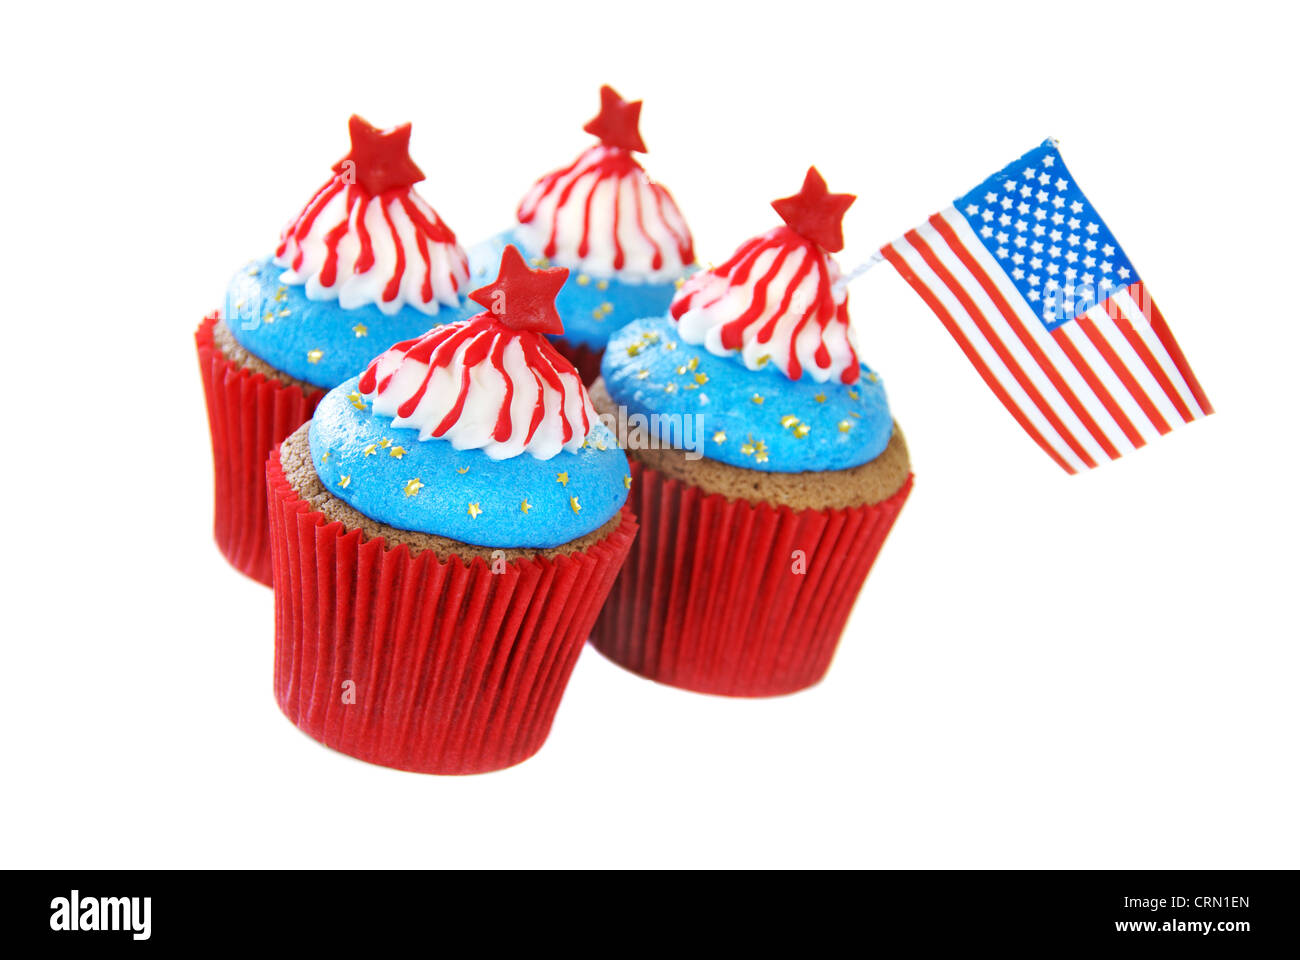 Cupcakes mit amerikanisches patriotisches Thema für 4. Juli Feier und andere Veranstaltungen in Amerika. Stockfoto